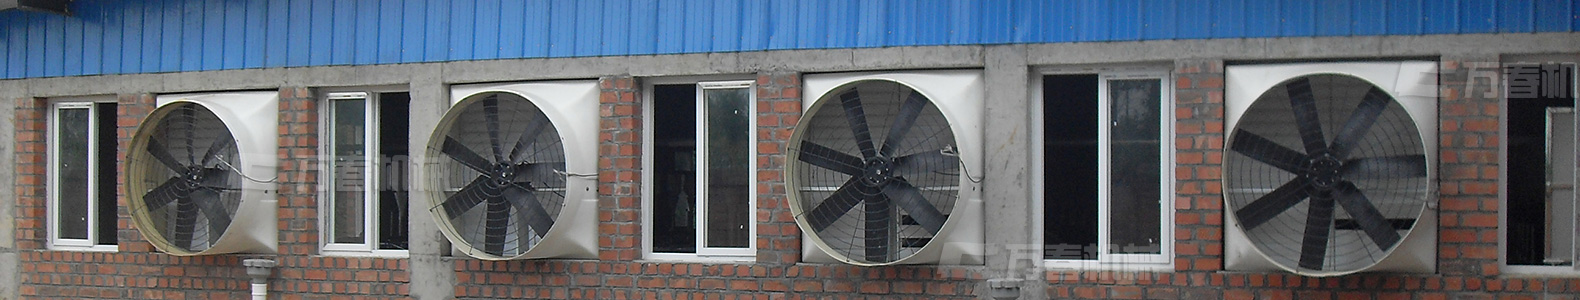 水簾通風降溫風機設備-四川成都萬春機械